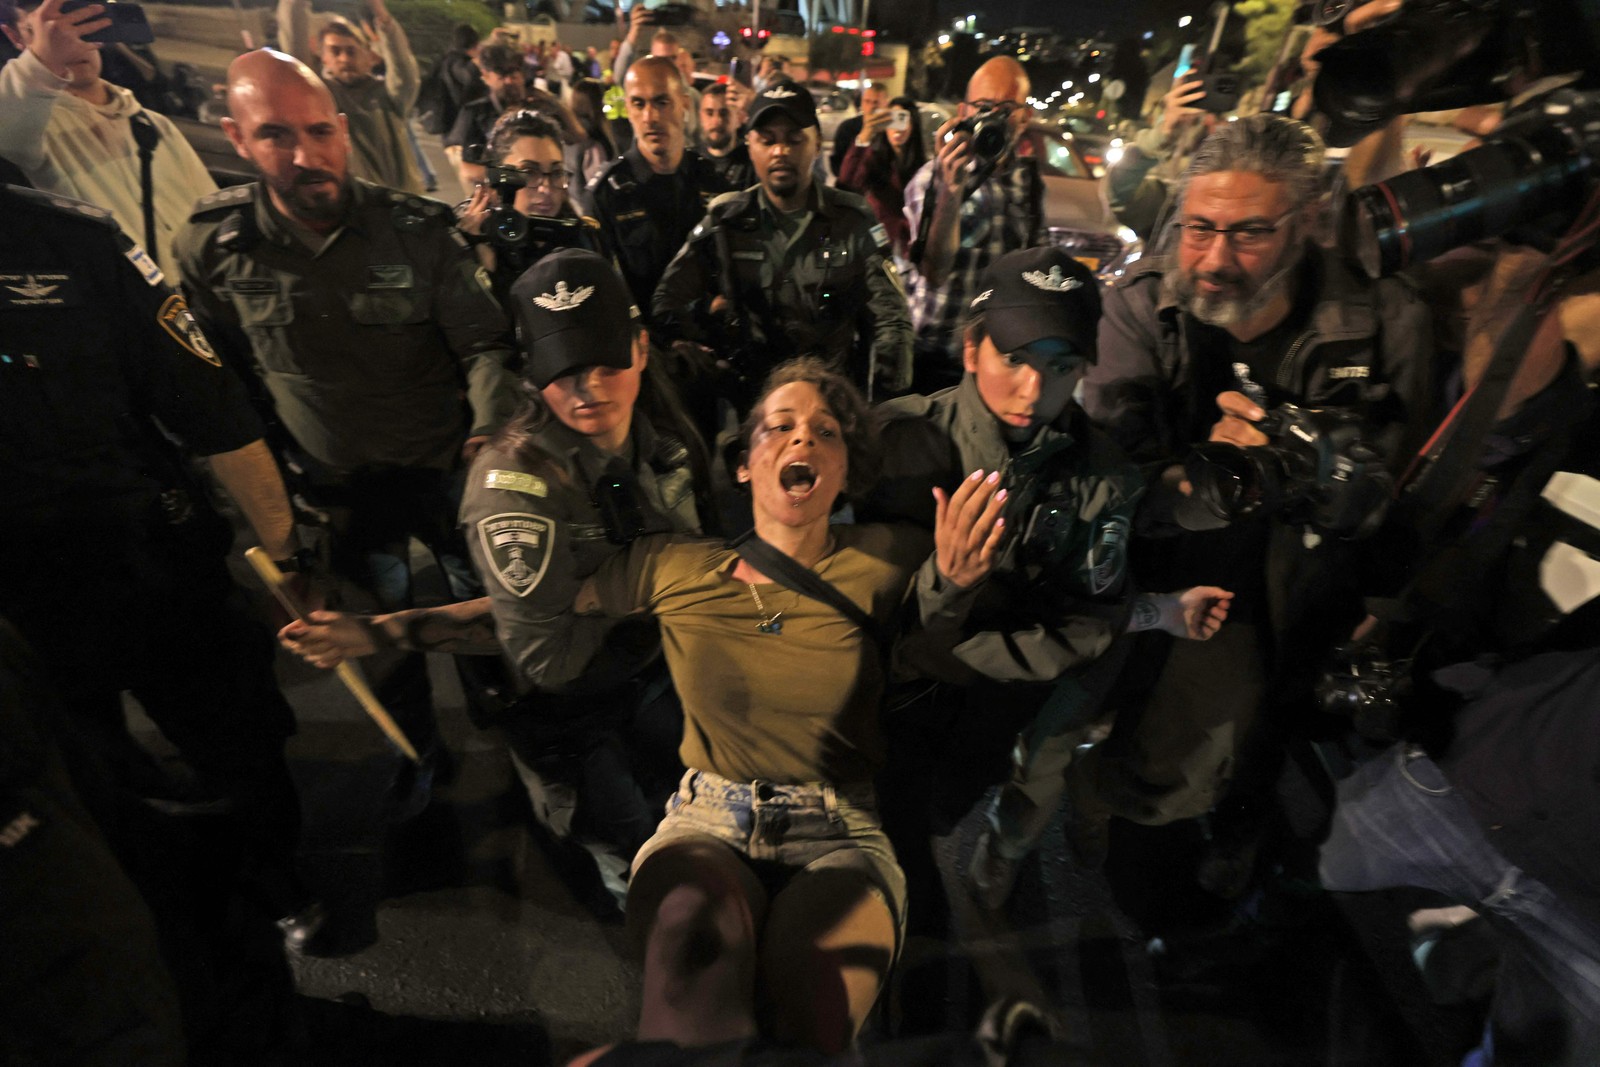 Reforma extremista. Israel vive sob protestos contra projeto de lei que dá poder ao congresso para derrubar decisões da Justiça — Foto: AHMAD GHARABLI/AFP